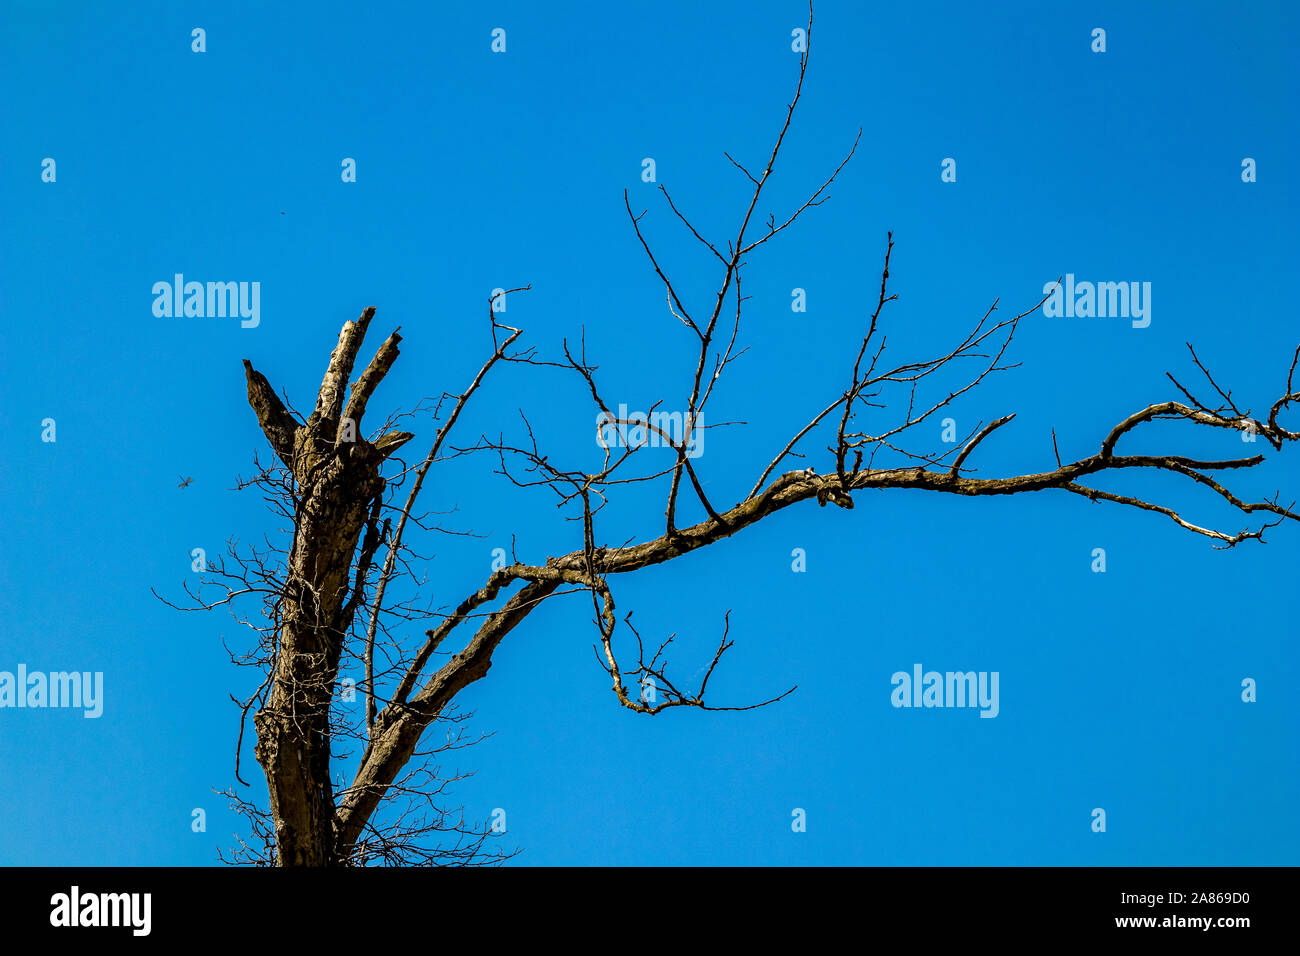 Trockenen Baum in einem Wald auf klaren blauen Himmel Hintergrund. Klimawandel, Trockenheit und der Tod, das Sterben der Natur Konzept, Berg in Albanien, sonniger Frühlingstag Stockfoto